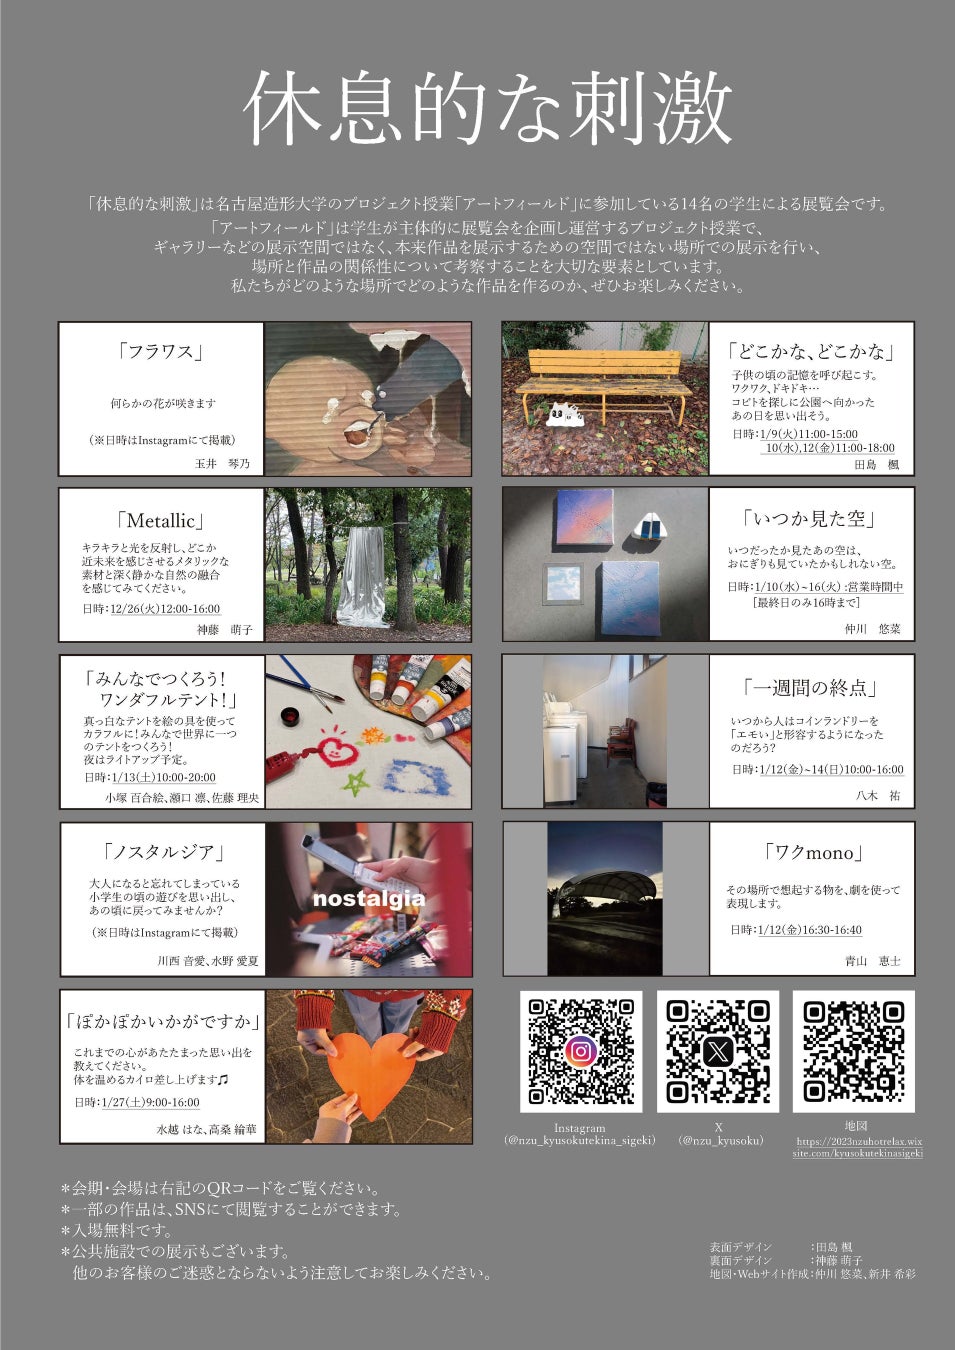 【名古屋造形大学】プロジェクト授業「アートフィールド」展覧会『休息的な刺激』